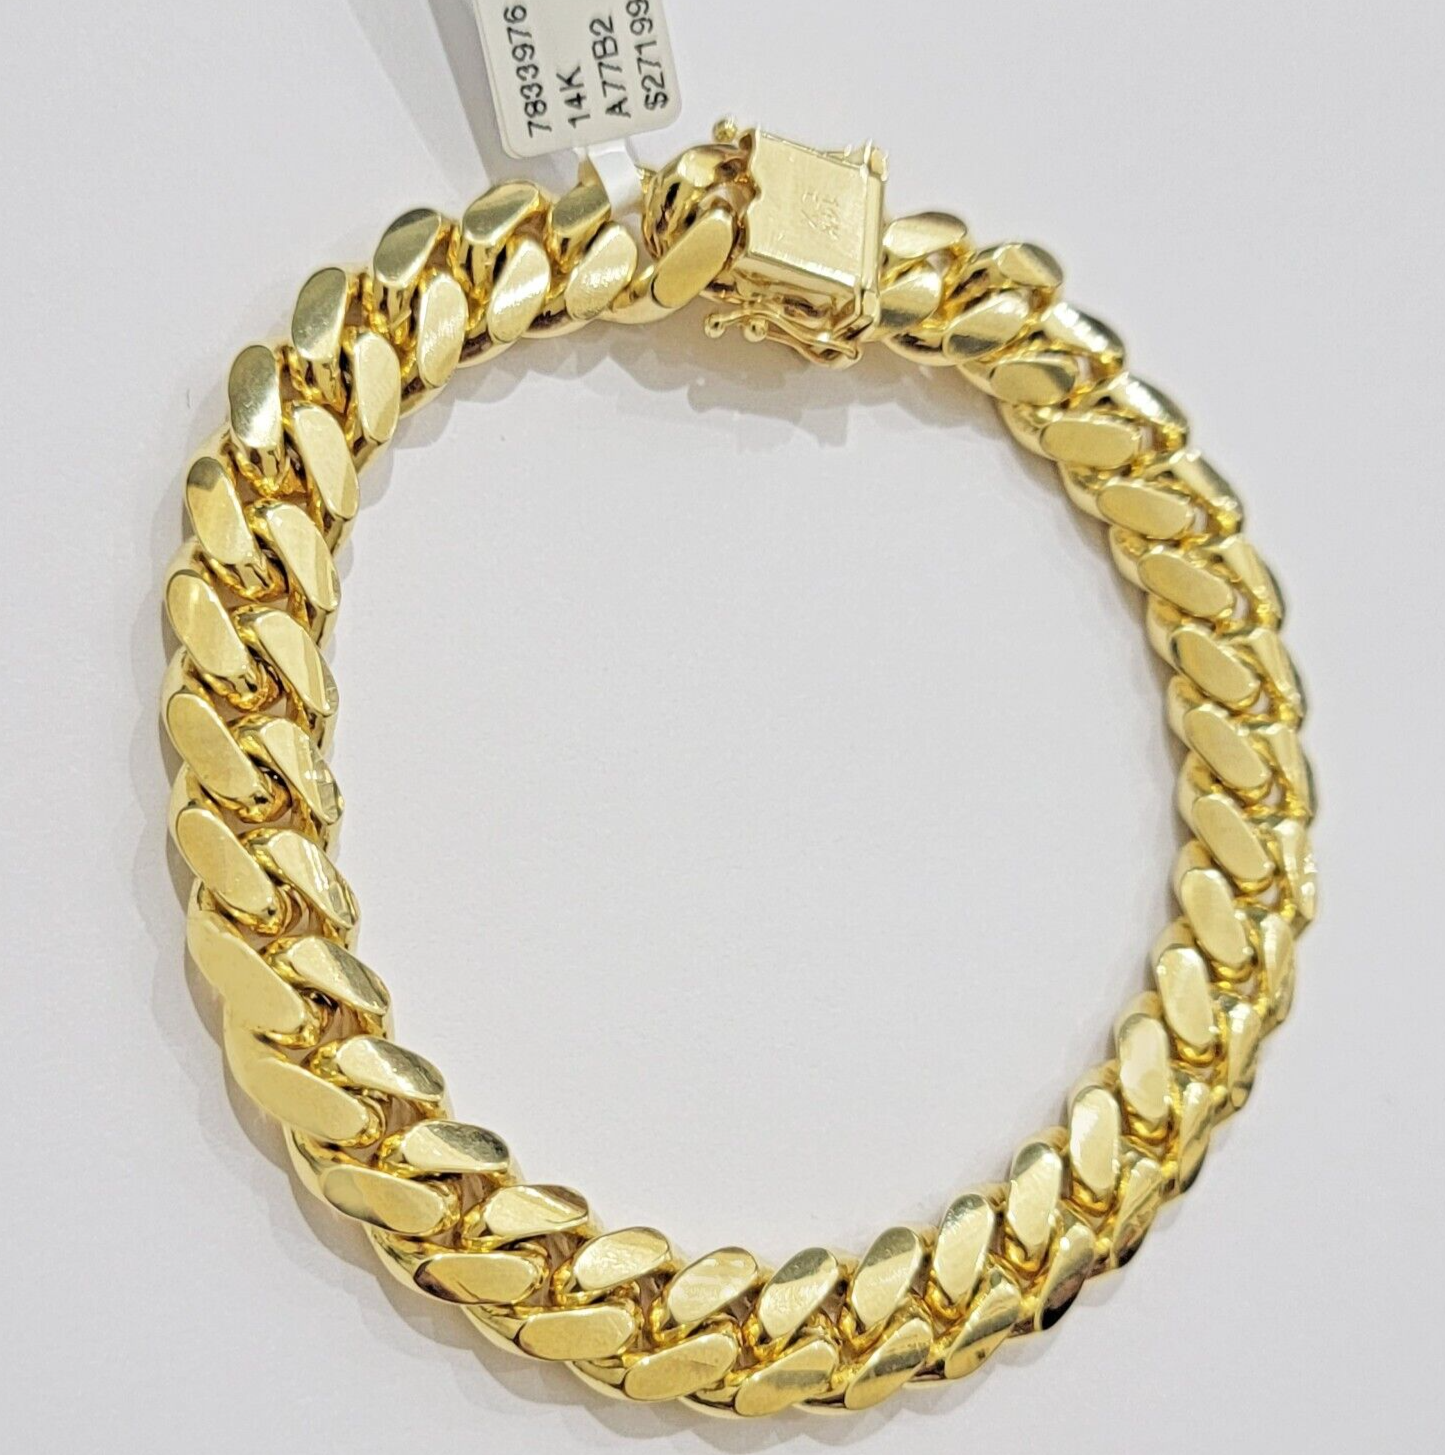 Real 14k Gold Bracelet 10mm 8.5 Inch Miami Cuban Link Men's 14kt Solid & STRONG